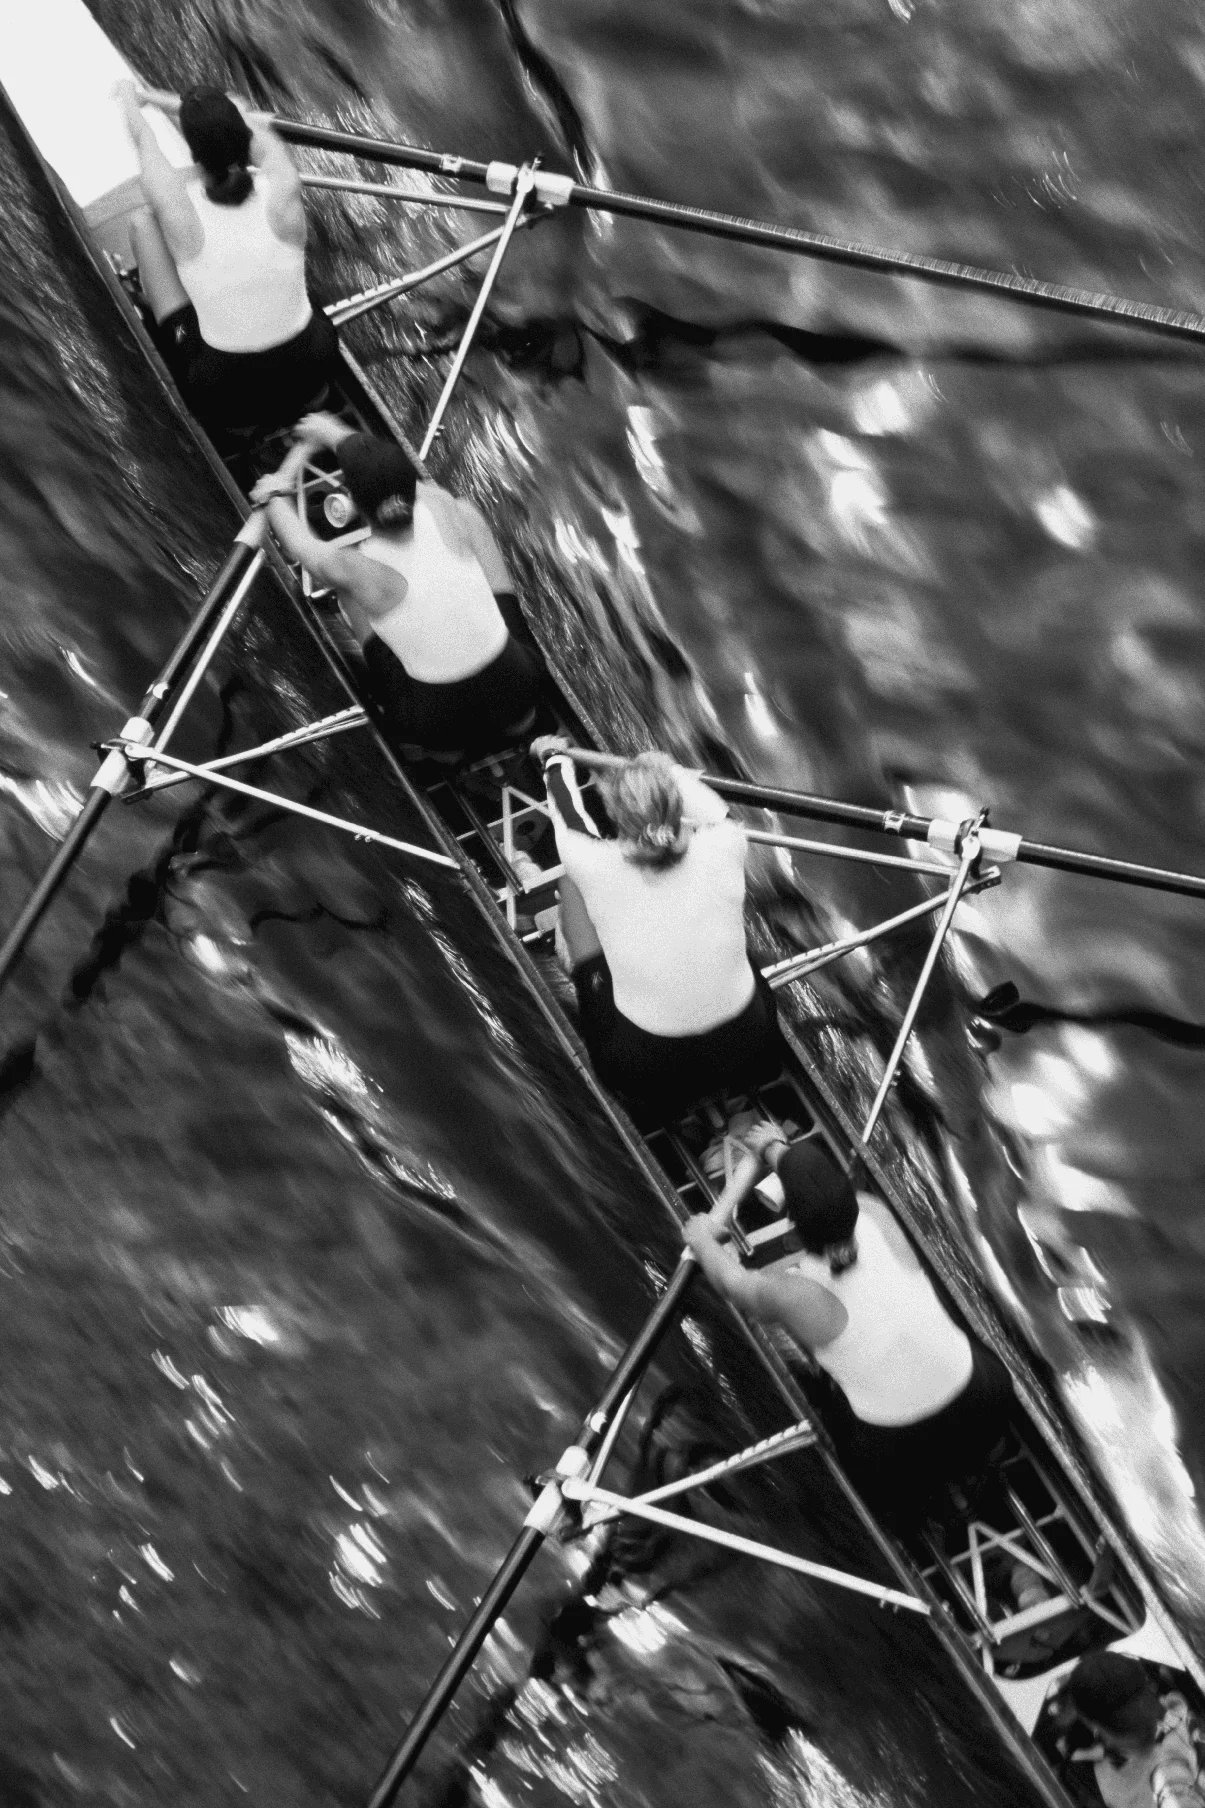 Vue aérienne d'un équipage d'aviron féminin dans leur coque de course, bateau à rames